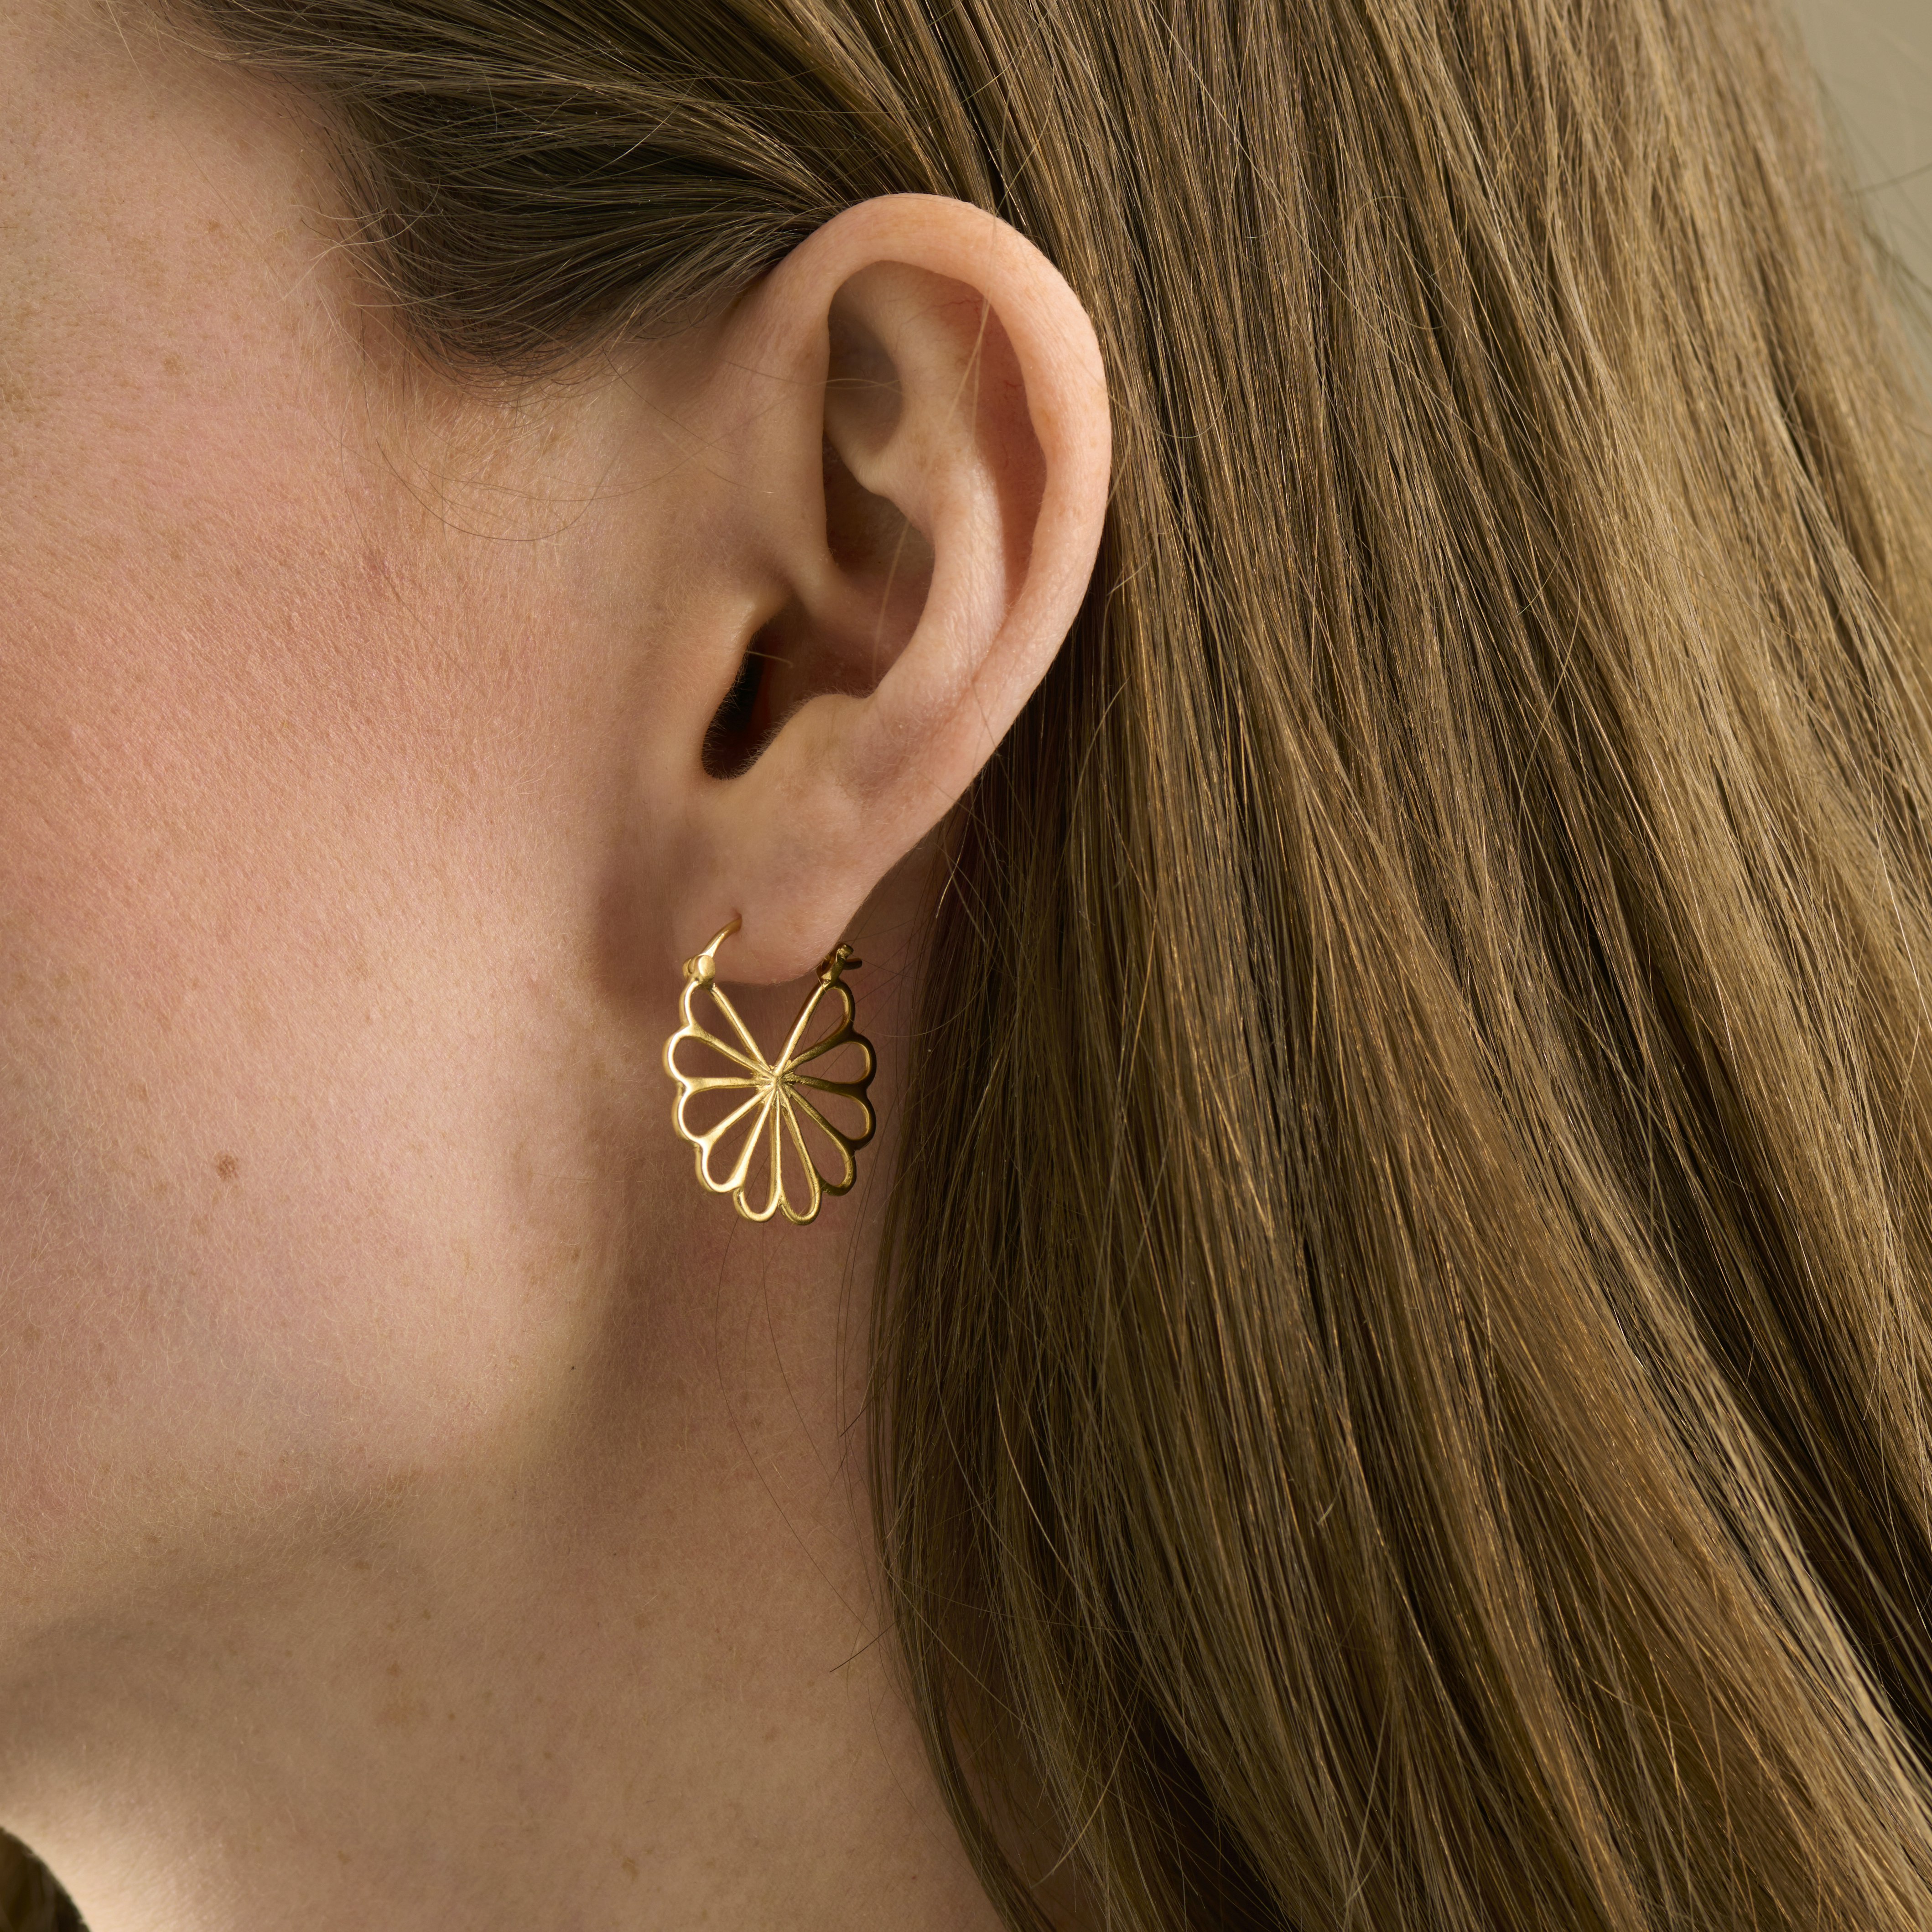 Bellis Earrings from Pernille Corydon in Silver Sterling 925